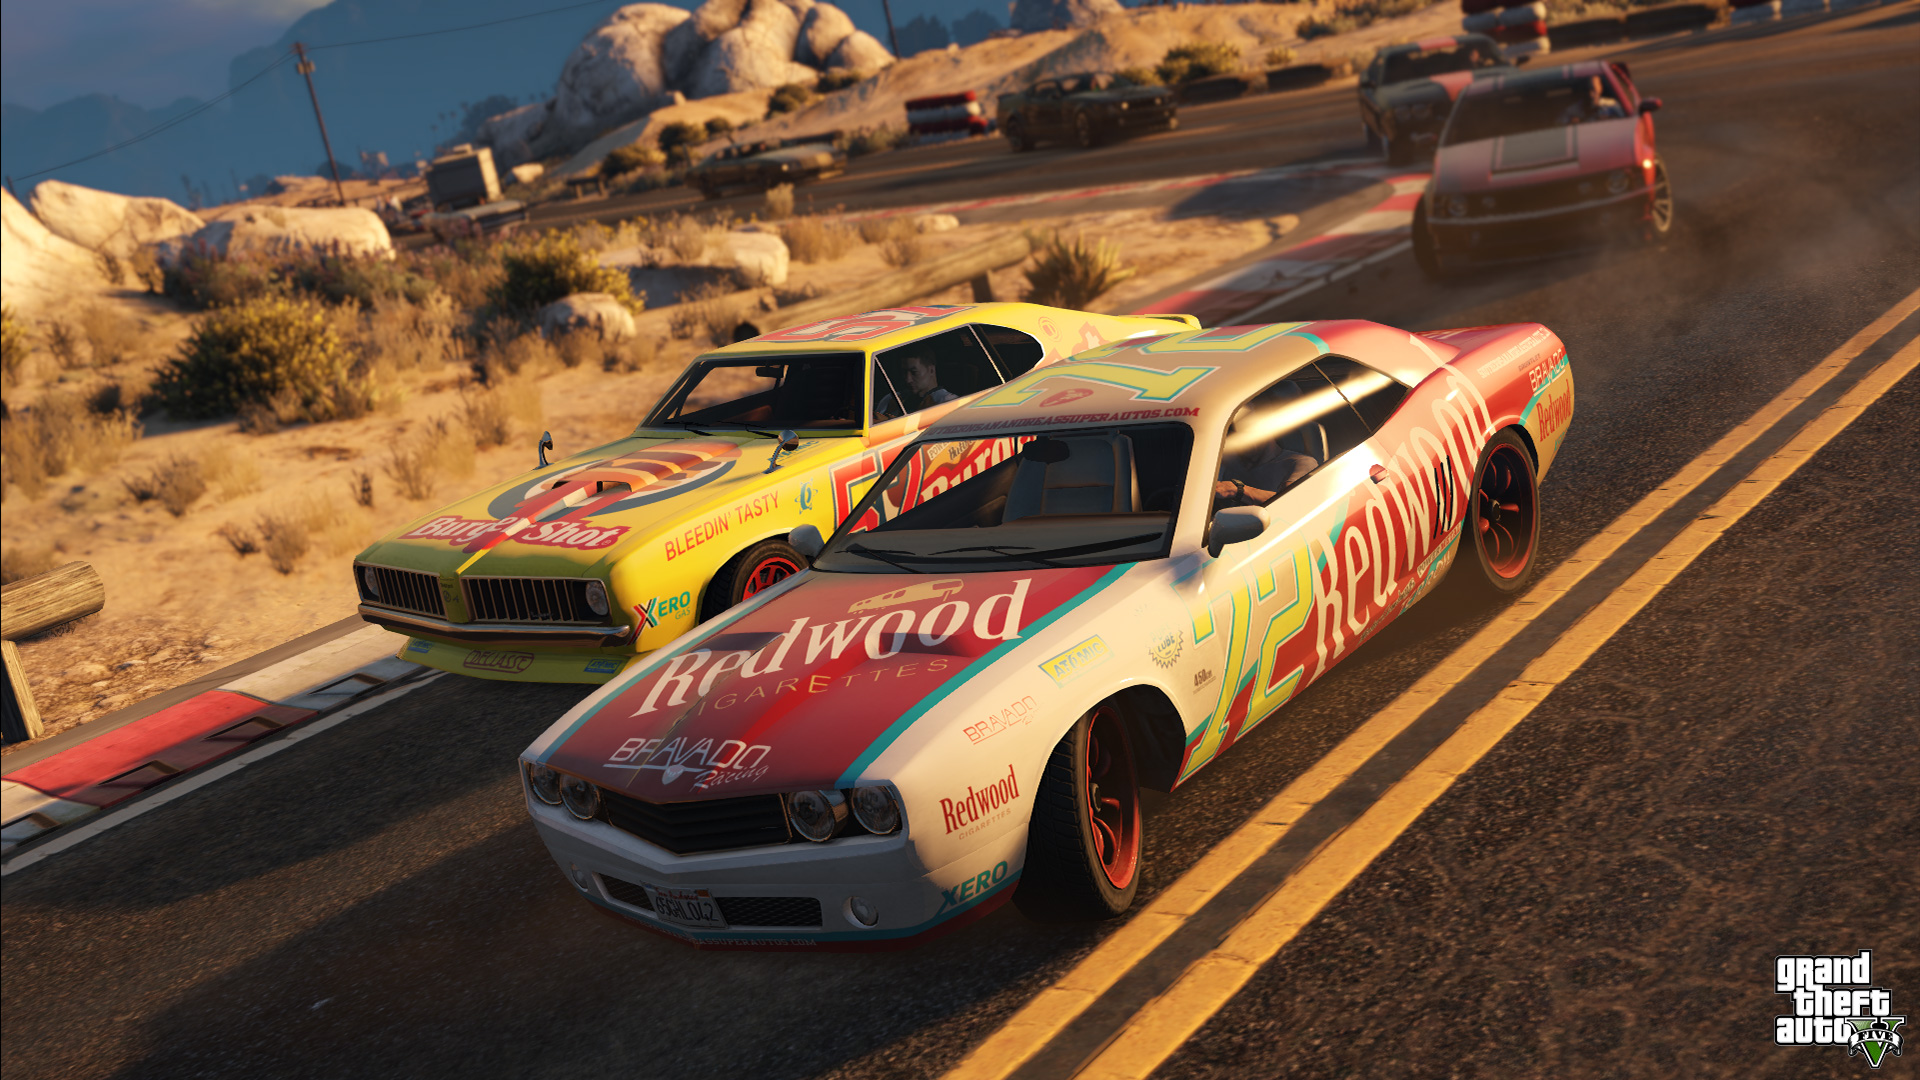 Immagine pubblicata in relazione al seguente contenuto: Rockstar pubblica nuove info e screenshots di Grand Theft Auto V | Nome immagine: news21805_Grand-Theft-Auto-V_6.jpg